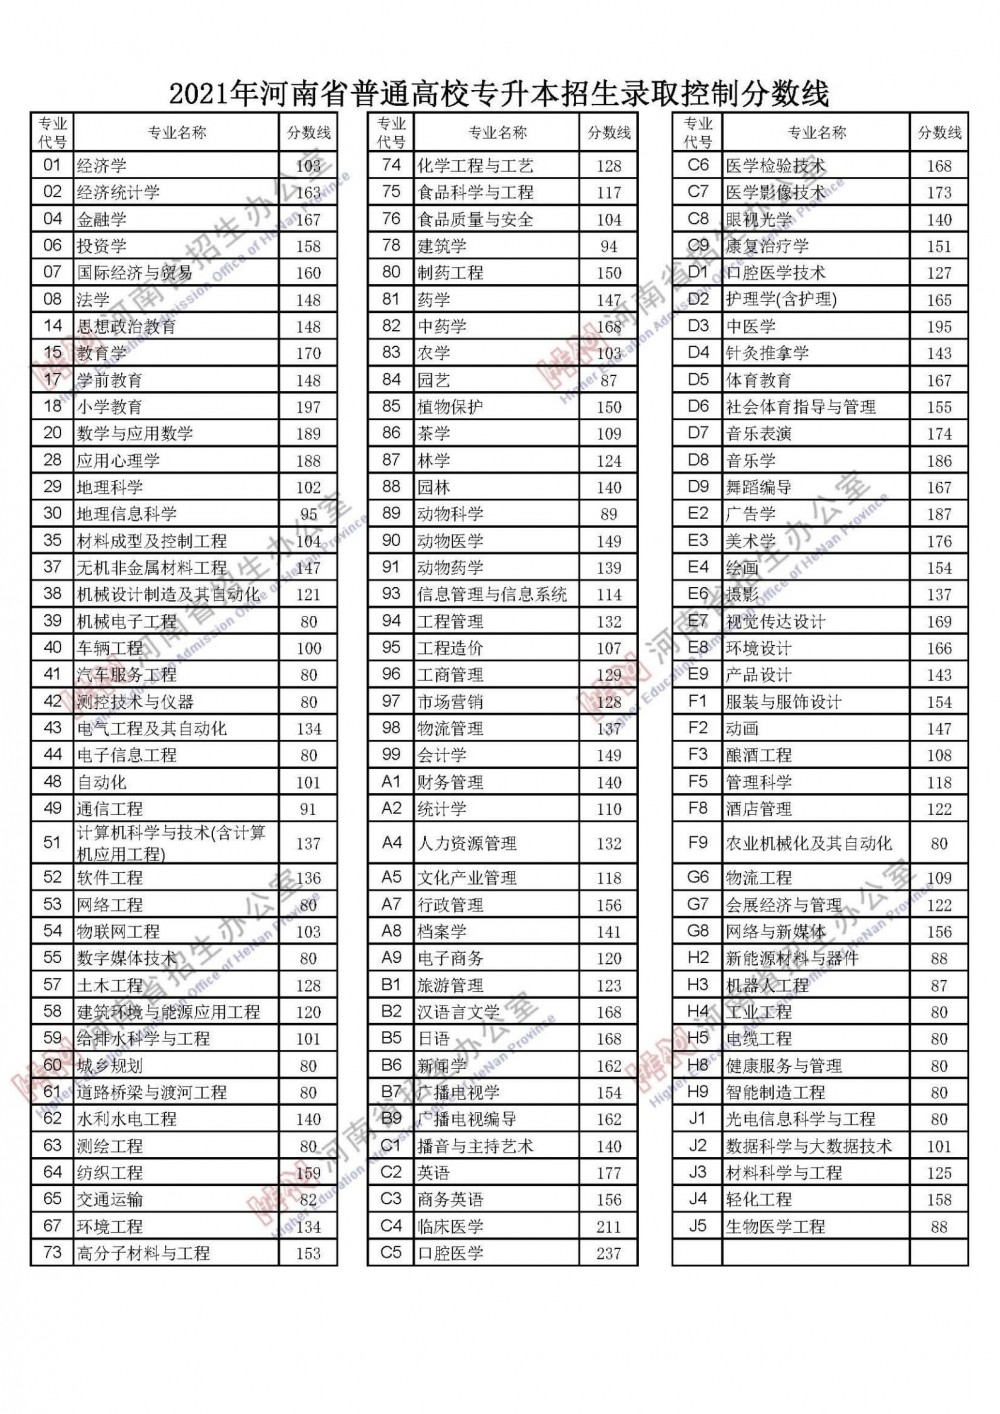 2022年河南省高考分数线公布